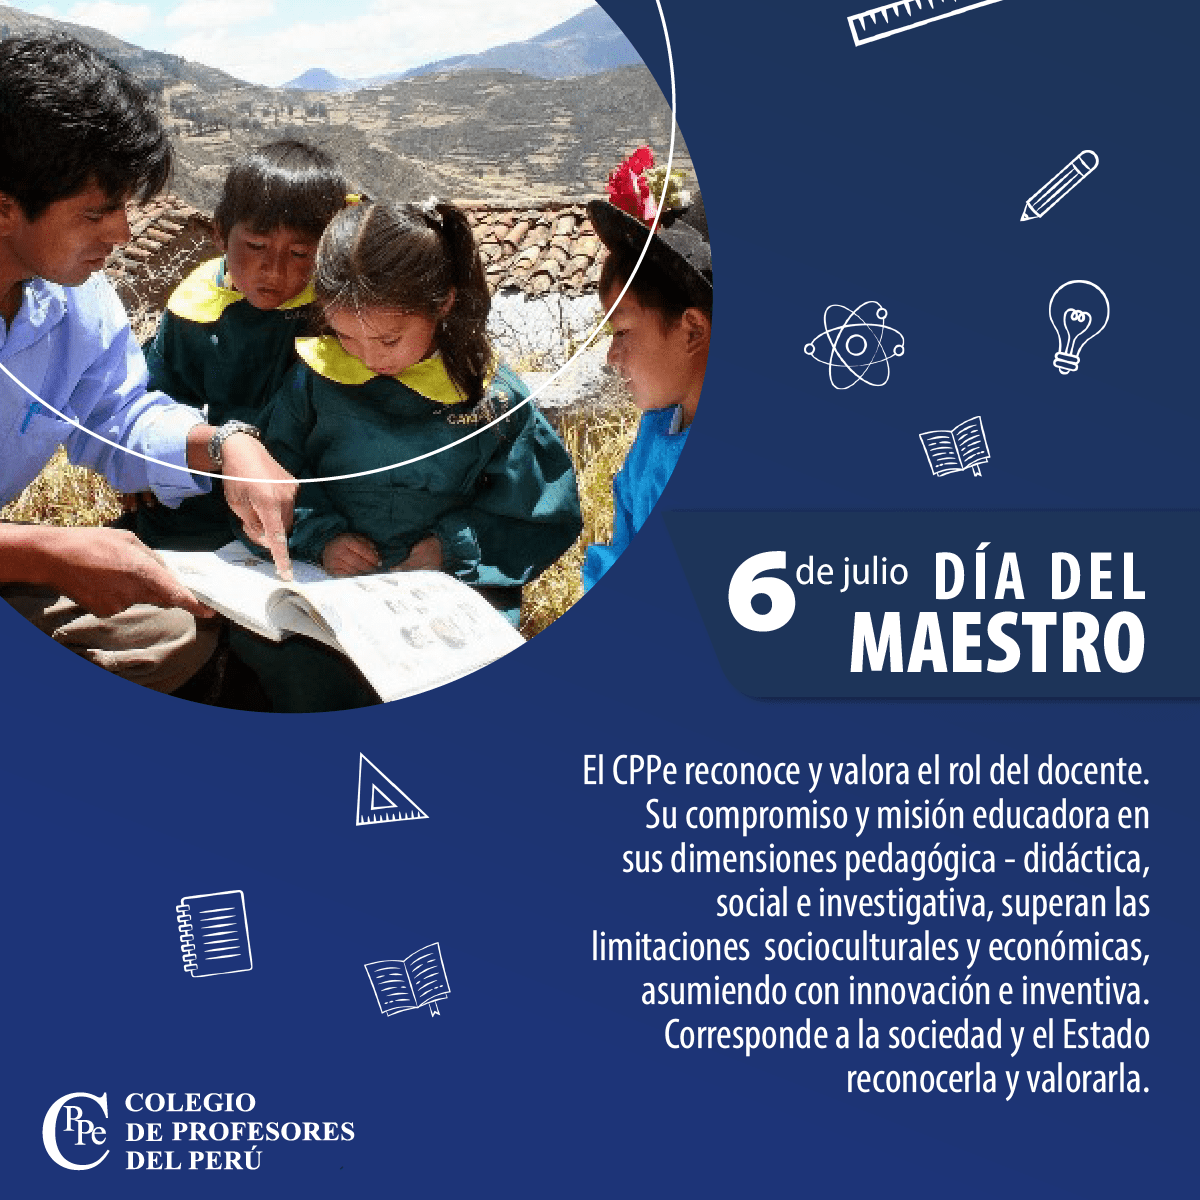 Los maestros del Perú se reinventaron para asumir su rol educador y merecen ser reconocidos y valorados por la sociedad y el Estado  